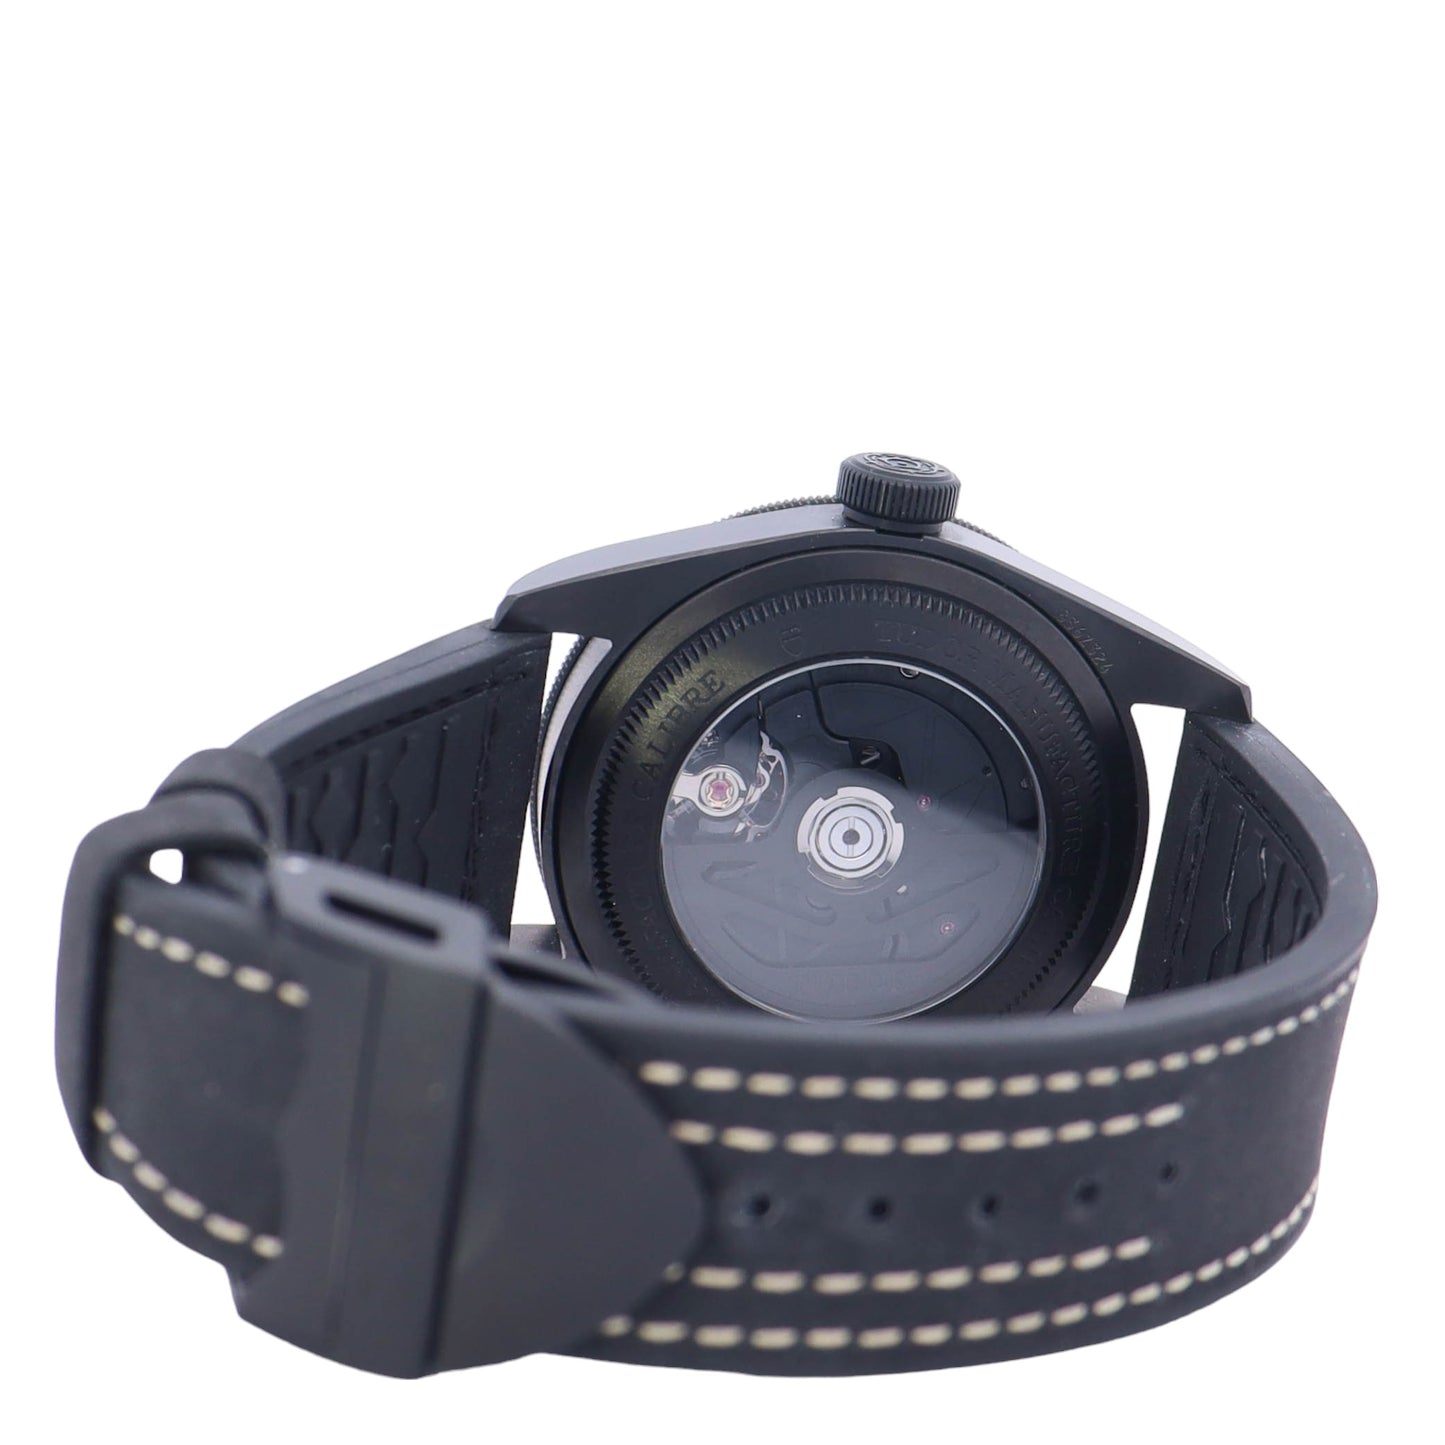 Tudor Black Bay Ceramic 41mm Black Dot Dial Watch Reference# 79210CNU - Happy Jewelers Fine Jewelry Lifetime Warranty